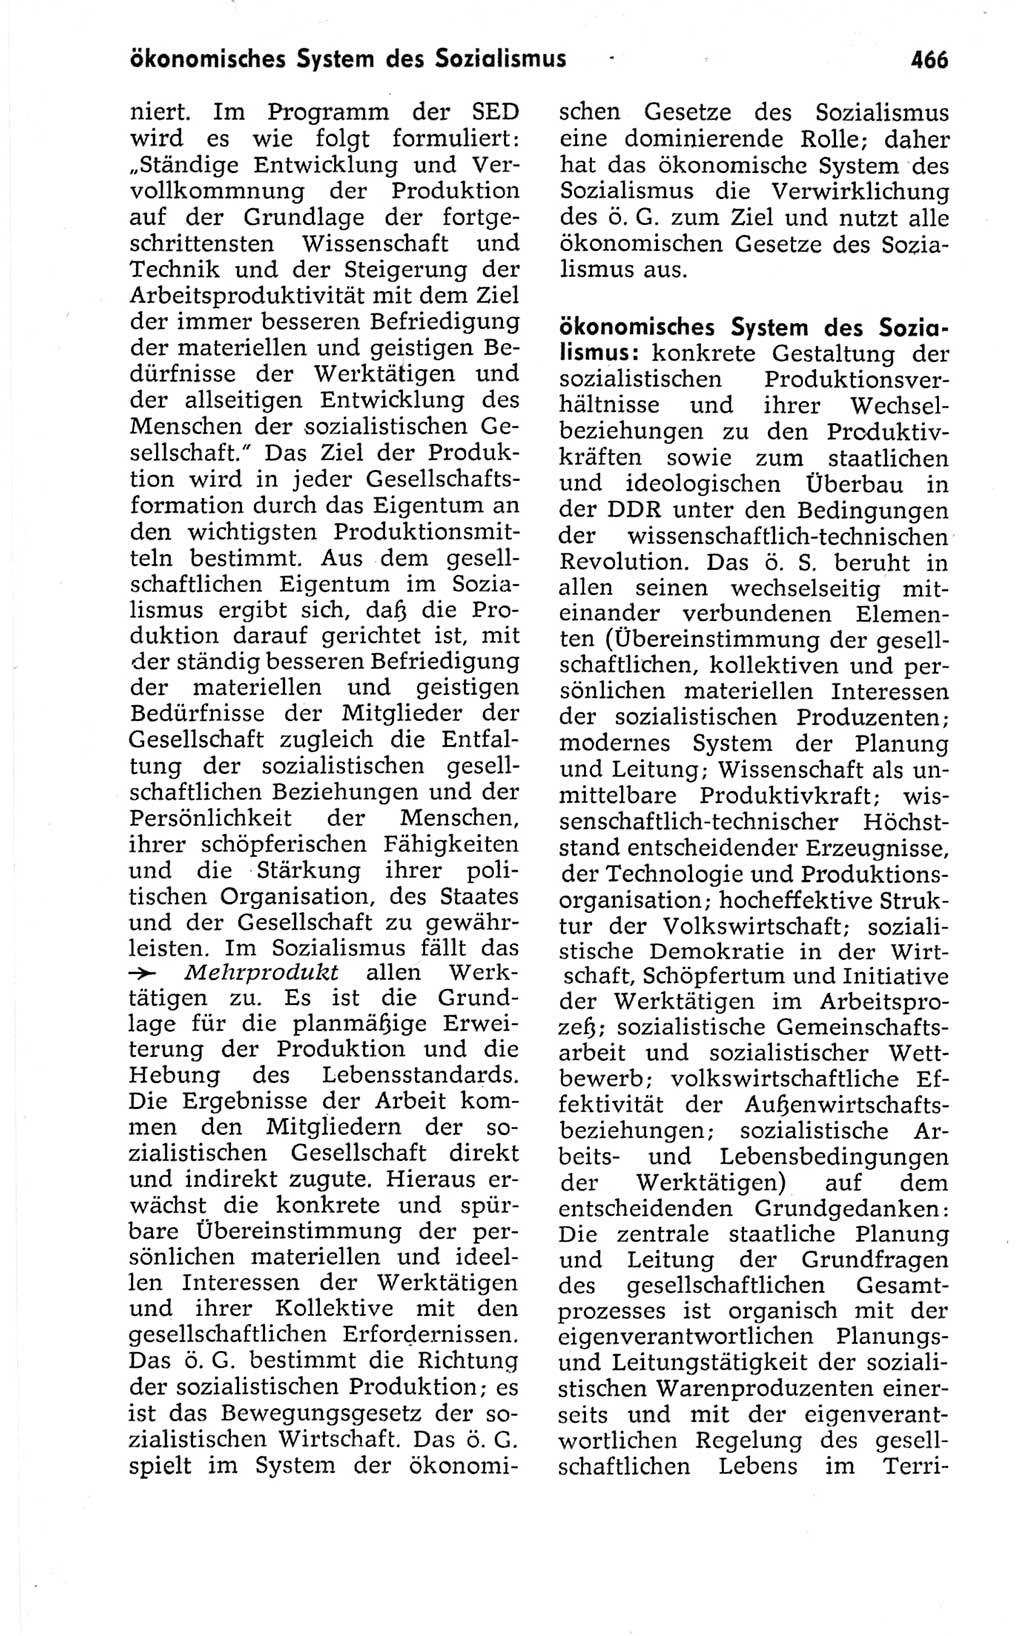 Kleines politisches Wörterbuch [Deutsche Demokratische Republik (DDR)] 1967, Seite 466 (Kl. pol. Wb. DDR 1967, S. 466)